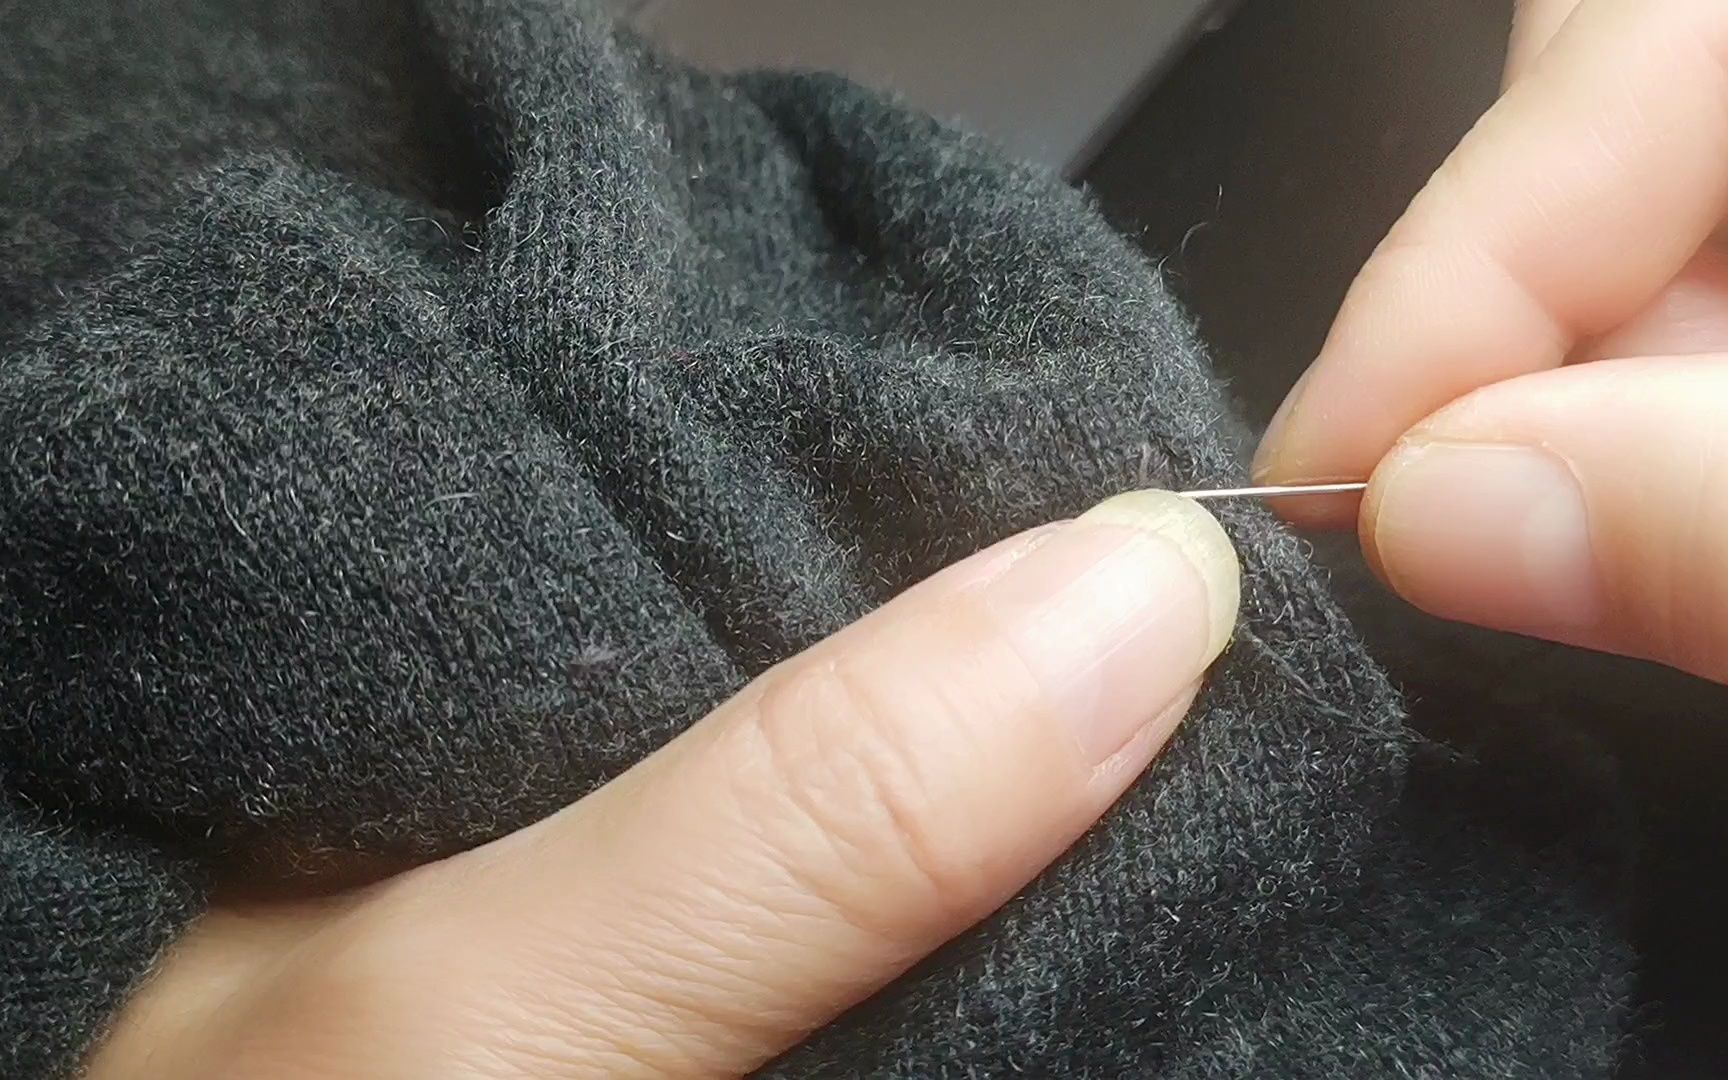 这么详细啊!毛衣织补找原线合缝织补过程